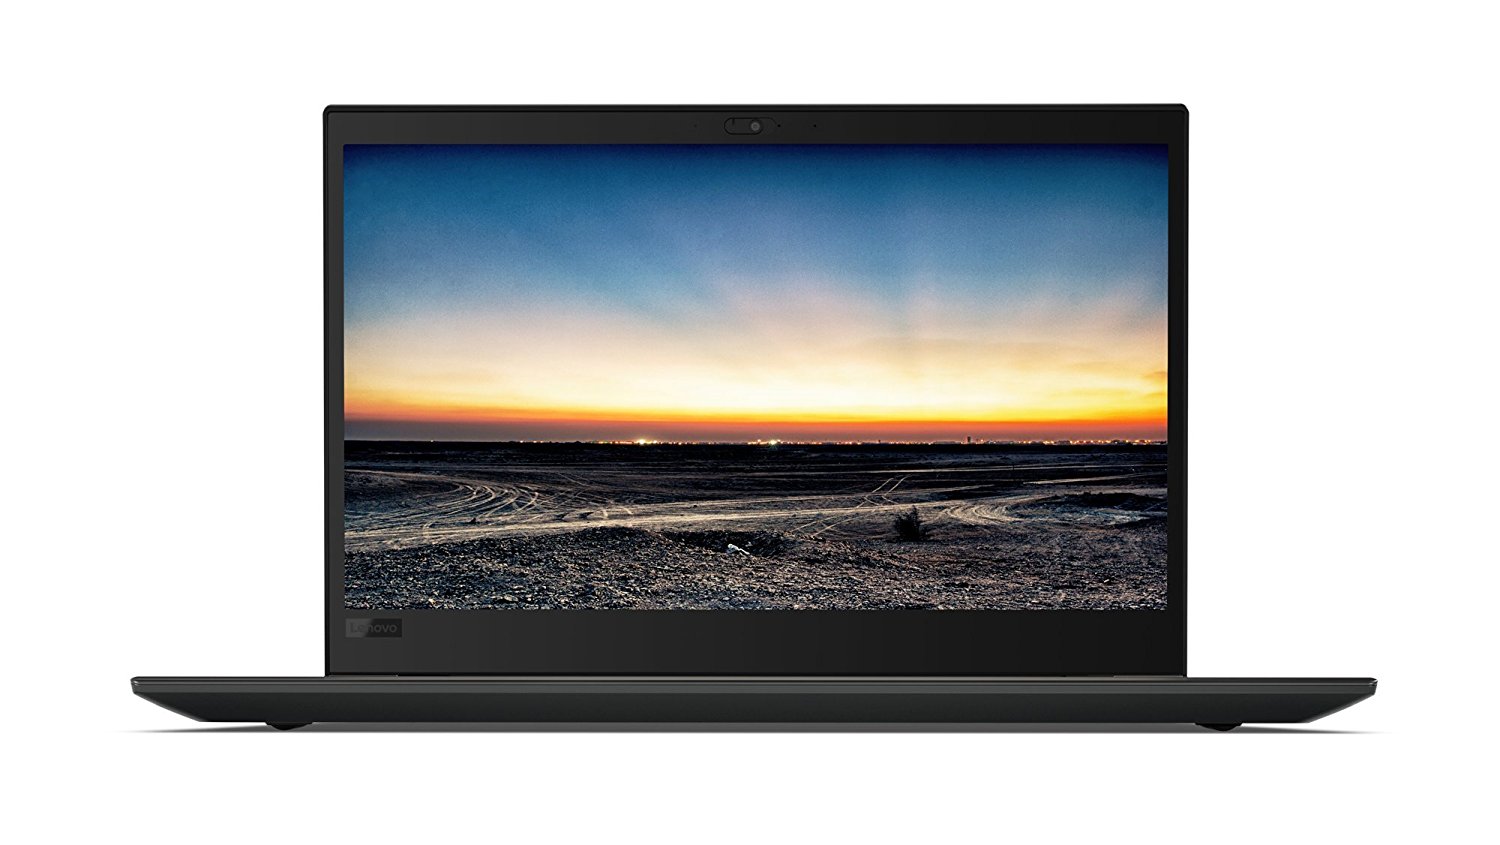 Notebook Lenovo ThinkPad T580 15.6 Full HD Intel Core i5-8250U RAM 8GB SSD 256GB Windows 10 Pro Negru